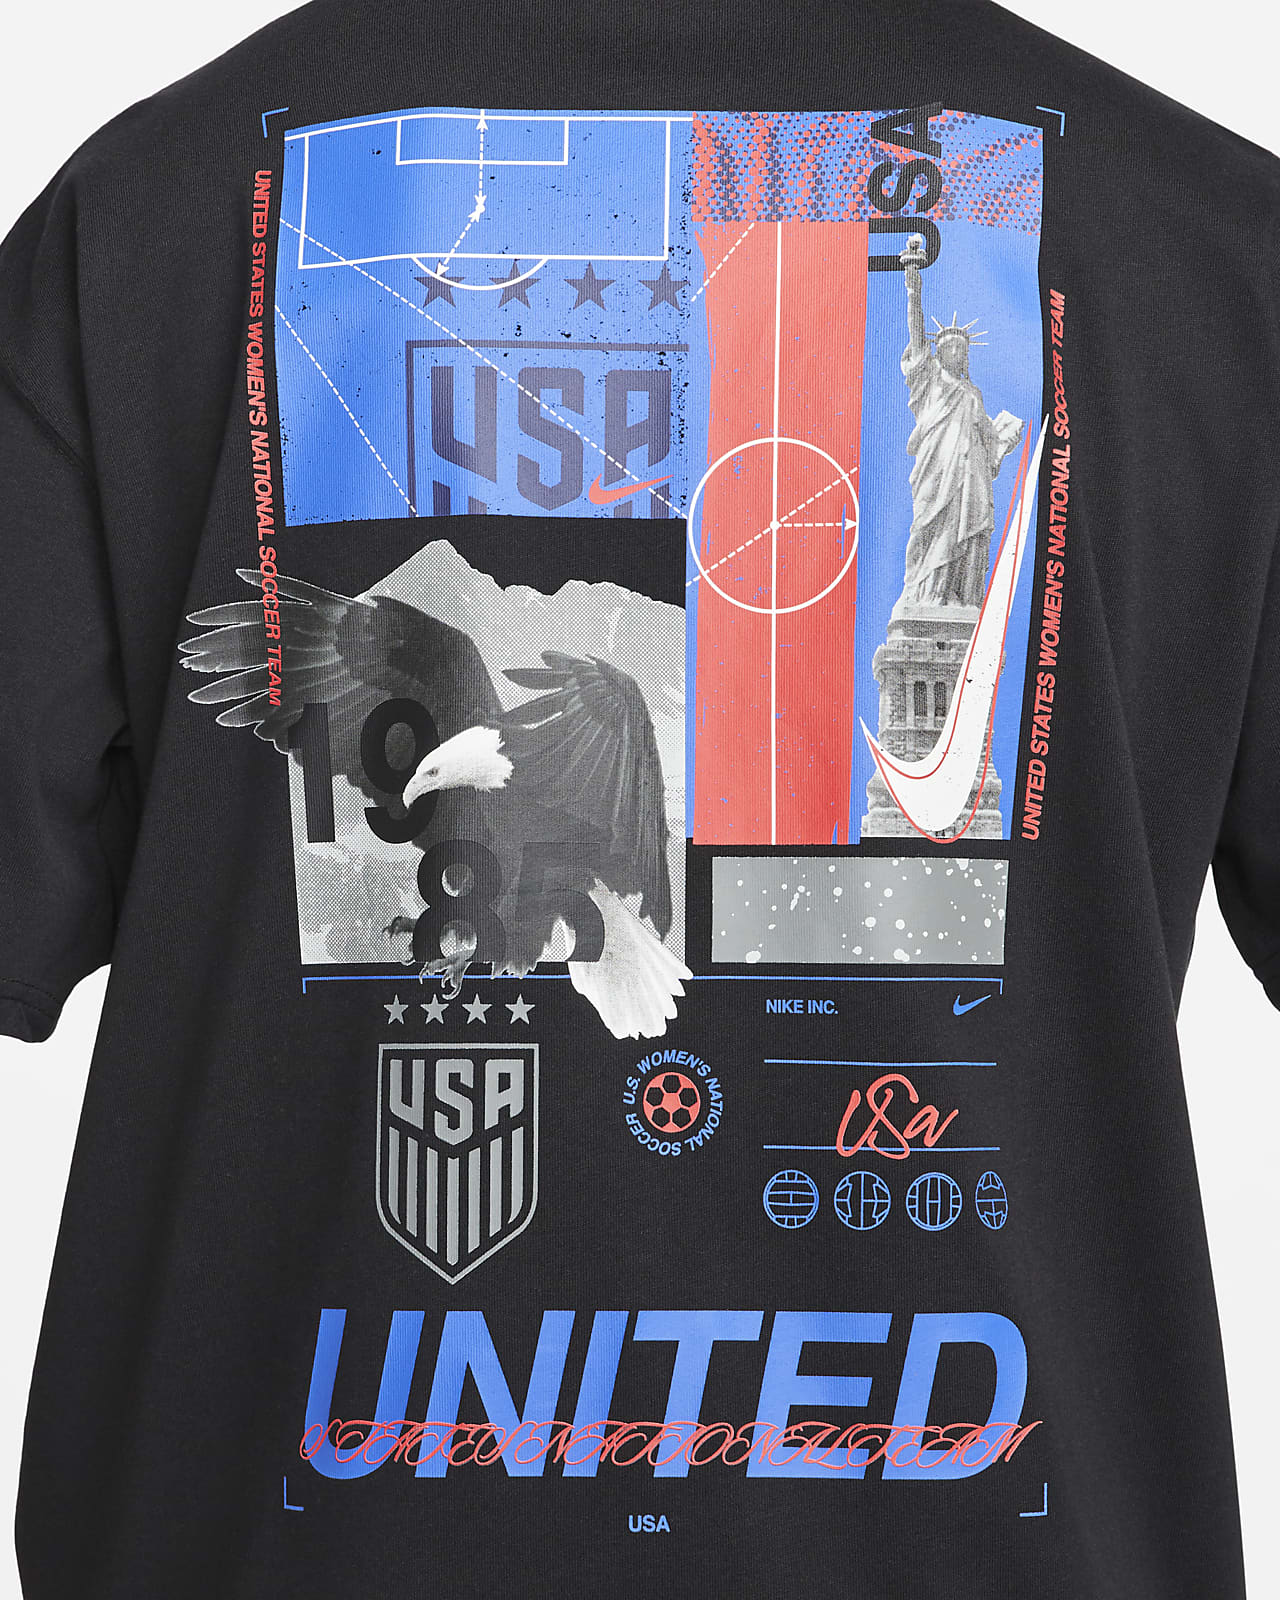 U.S. Men's Nike T-Shirt